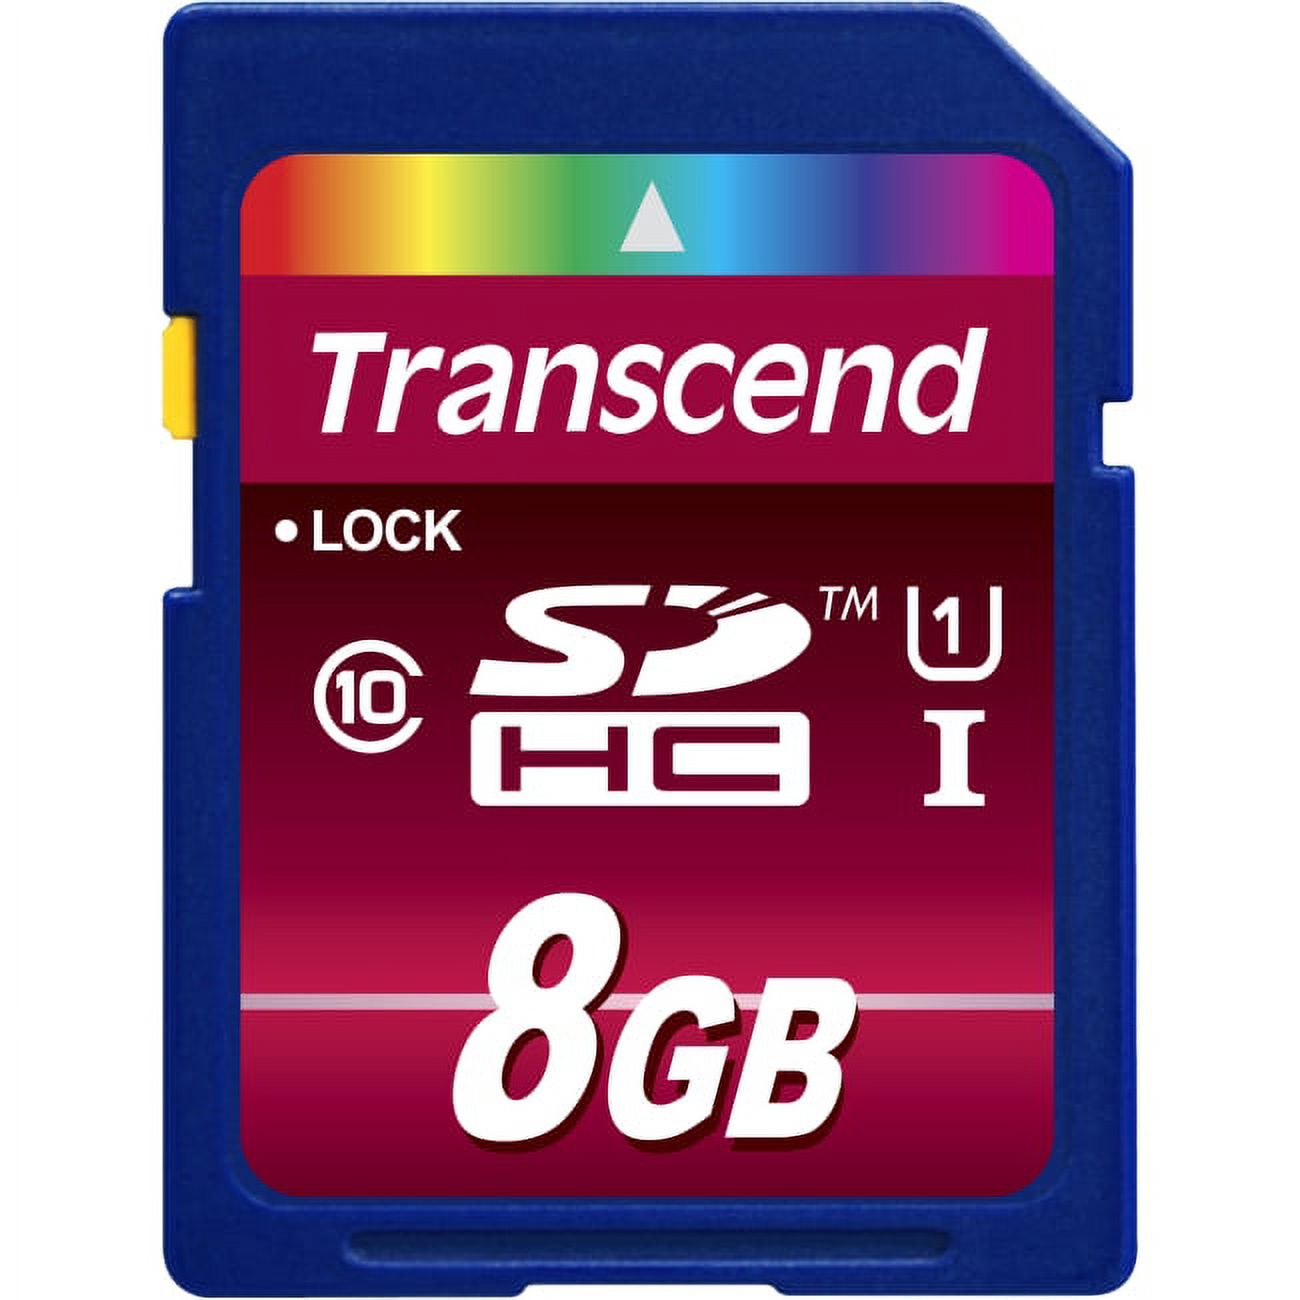 8GB TS8GSDHC10U1 SDHC 600X - image 1 of 2